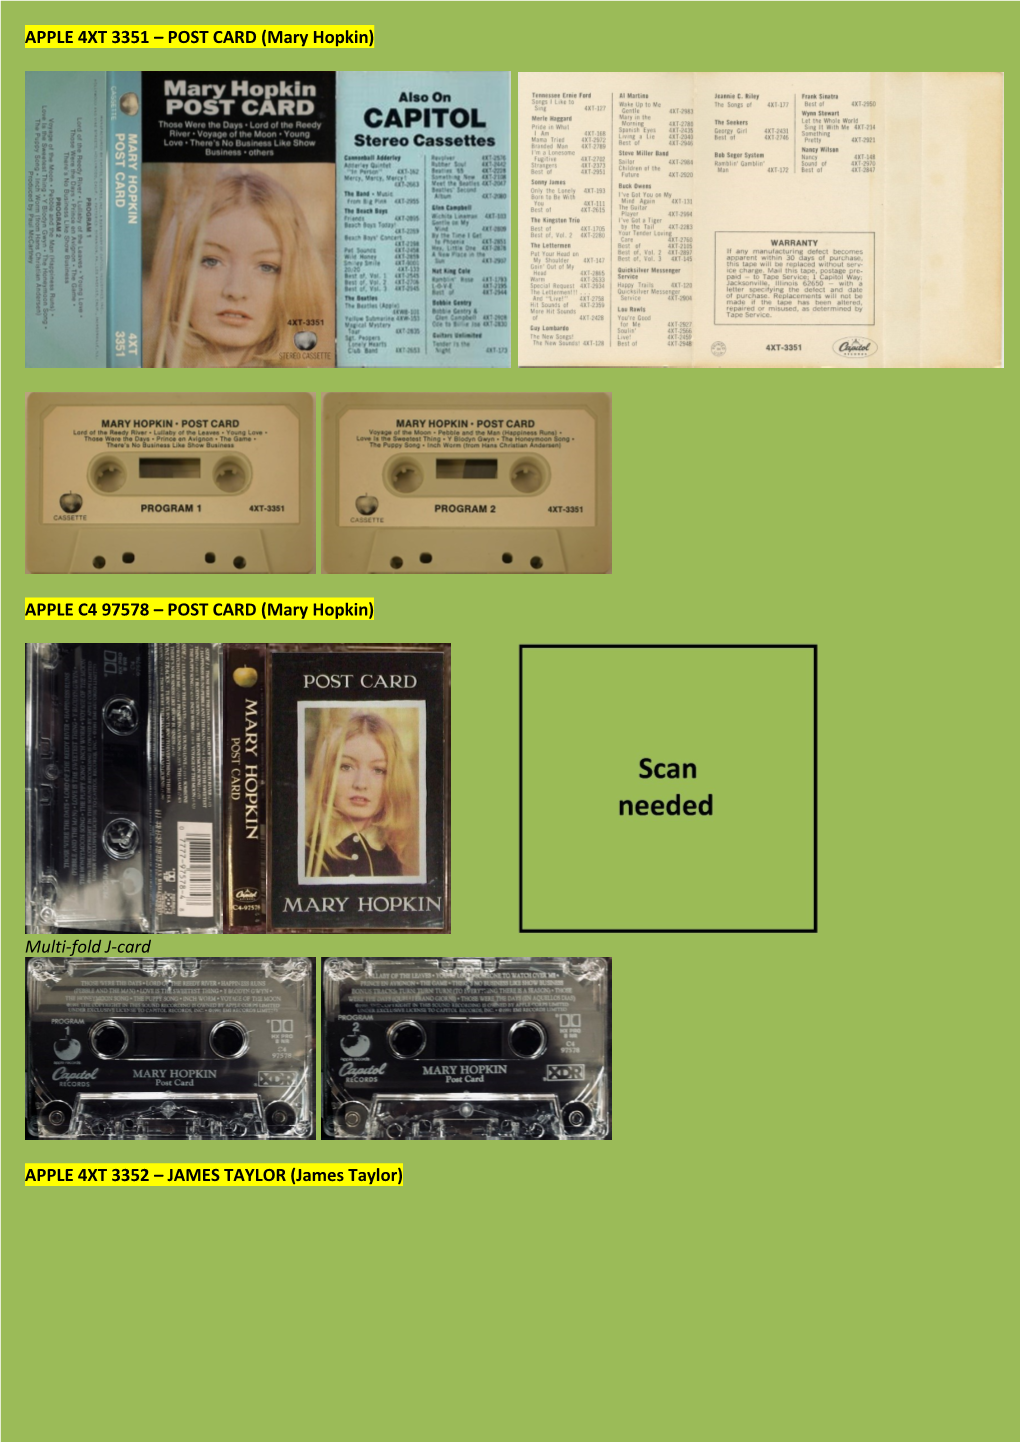 (Mary Hopkin) Multi-Fold J-Card APPLE 4XT 3352 – JAMES TAYLOR